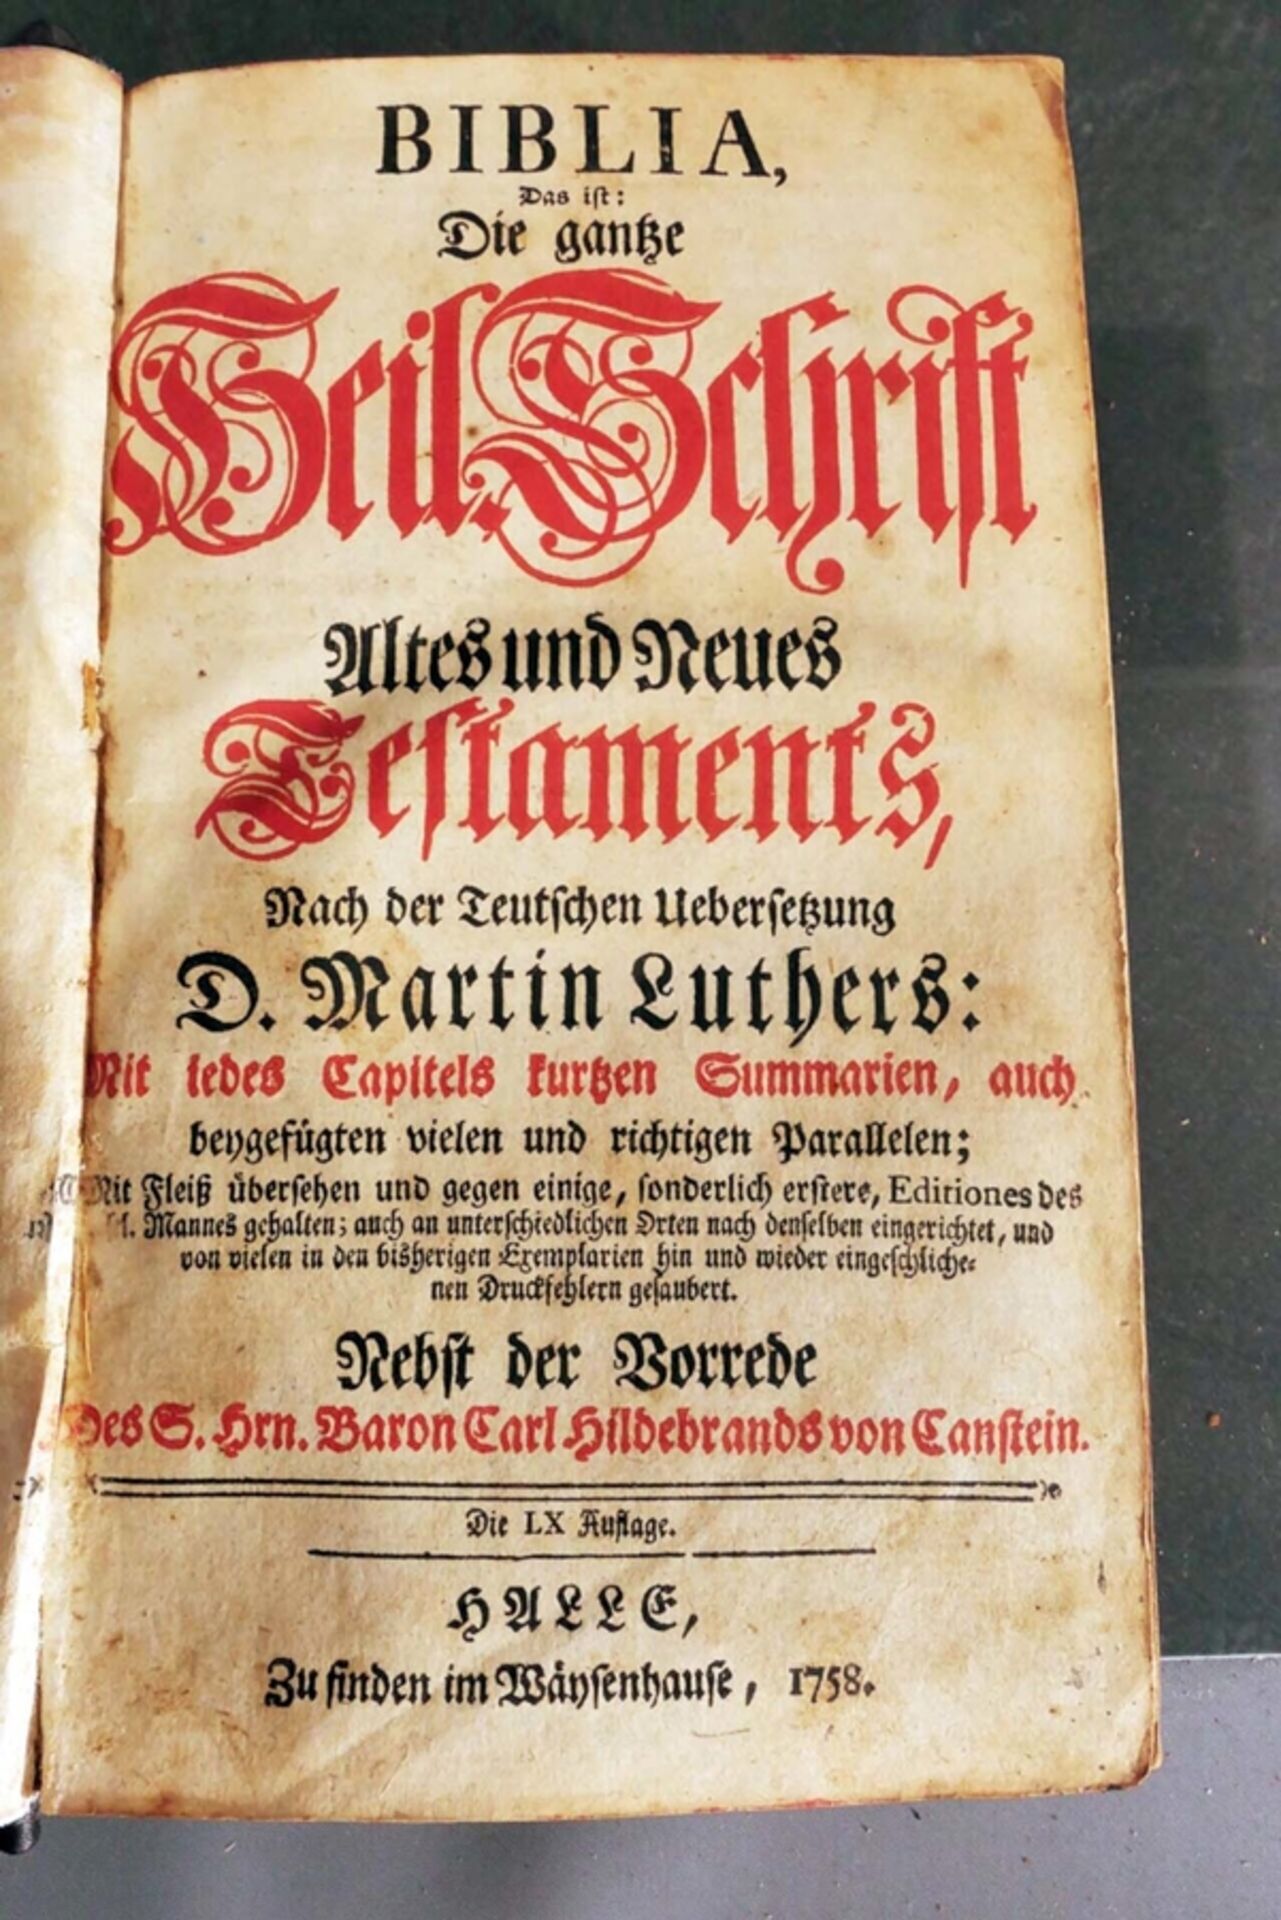 Über 30 versch. bibliophile Druckwerke des 18. - 20. Jhd., versch. Genre, Alter, Formate & Erhalt. - Image 3 of 11